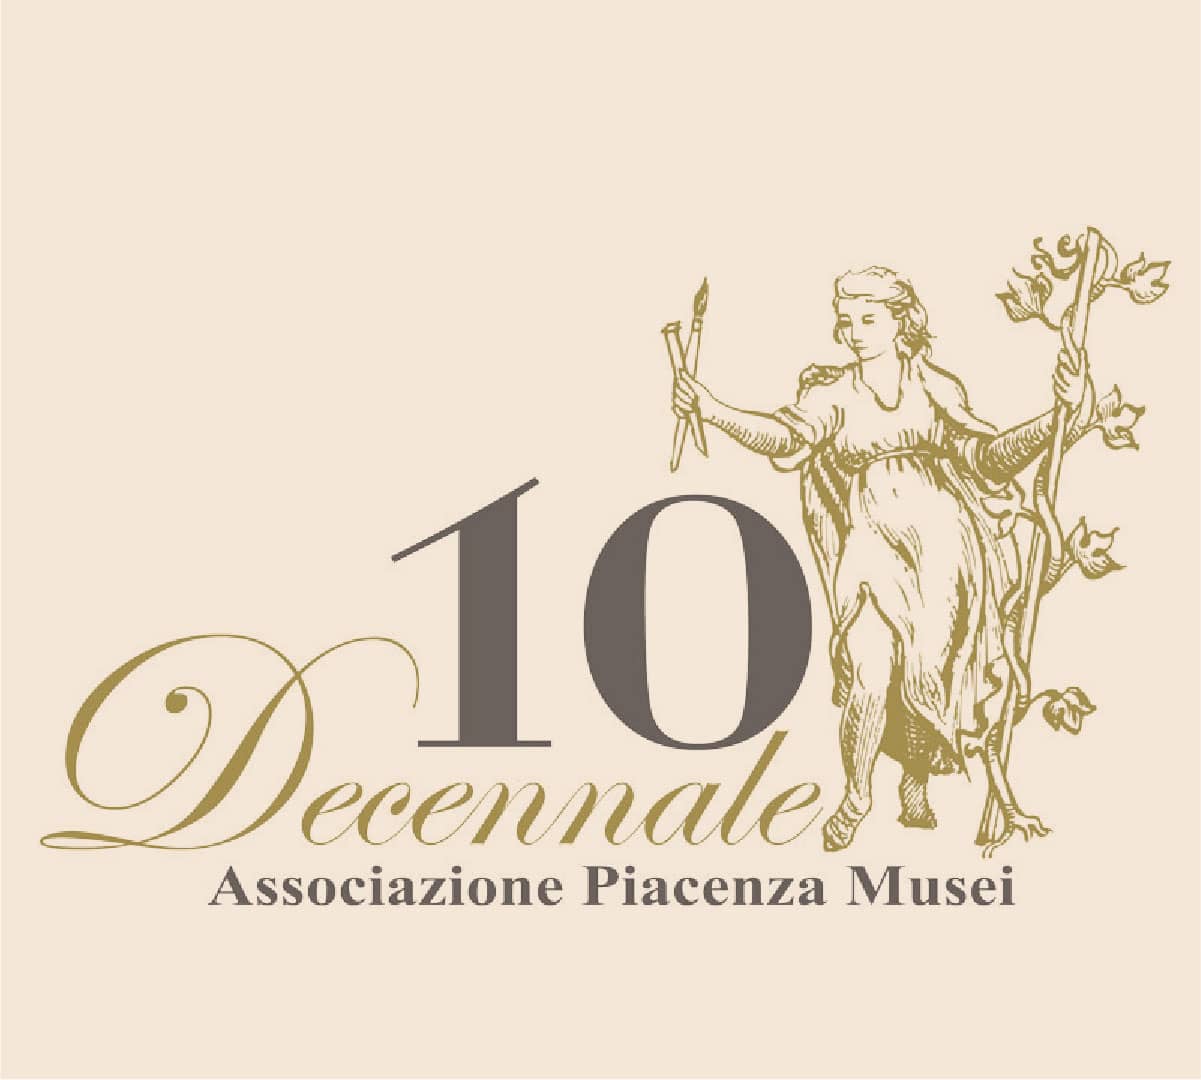 Associazione Piacenza Musei – Un prodotto editoriale sul patrimonio artistico ed enogastronomico piacentino